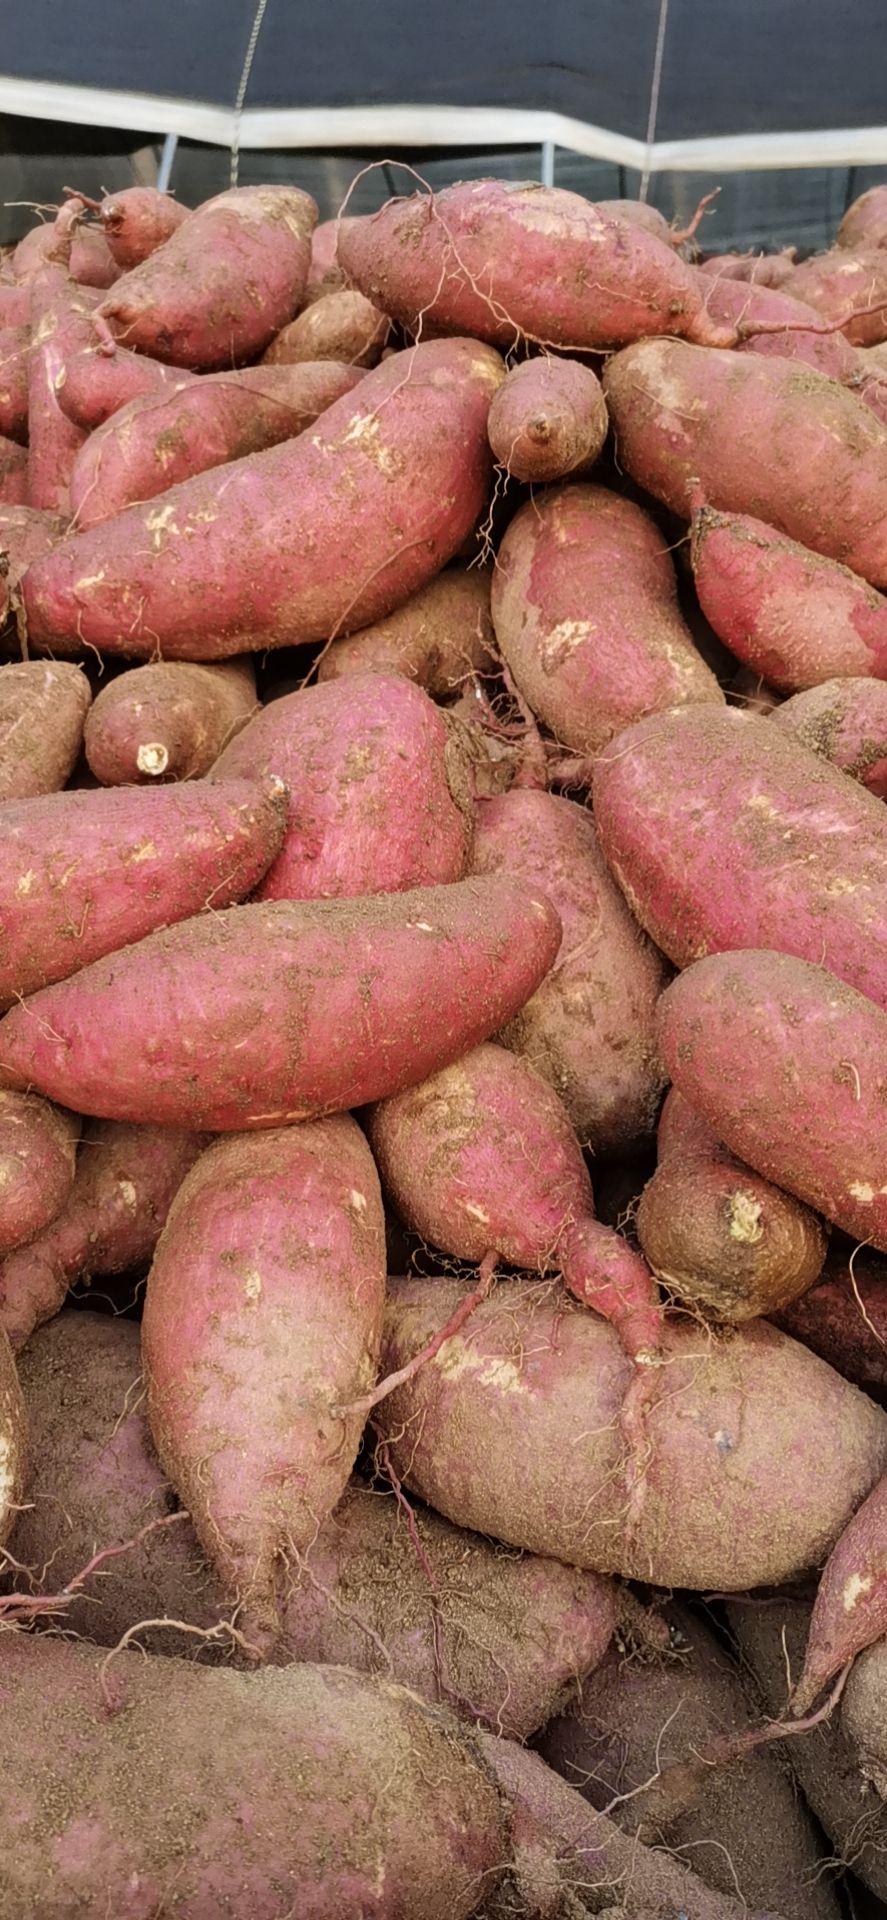 [济薯批发]红薯济薯26地瓜价格0.8元/斤 - 惠农网